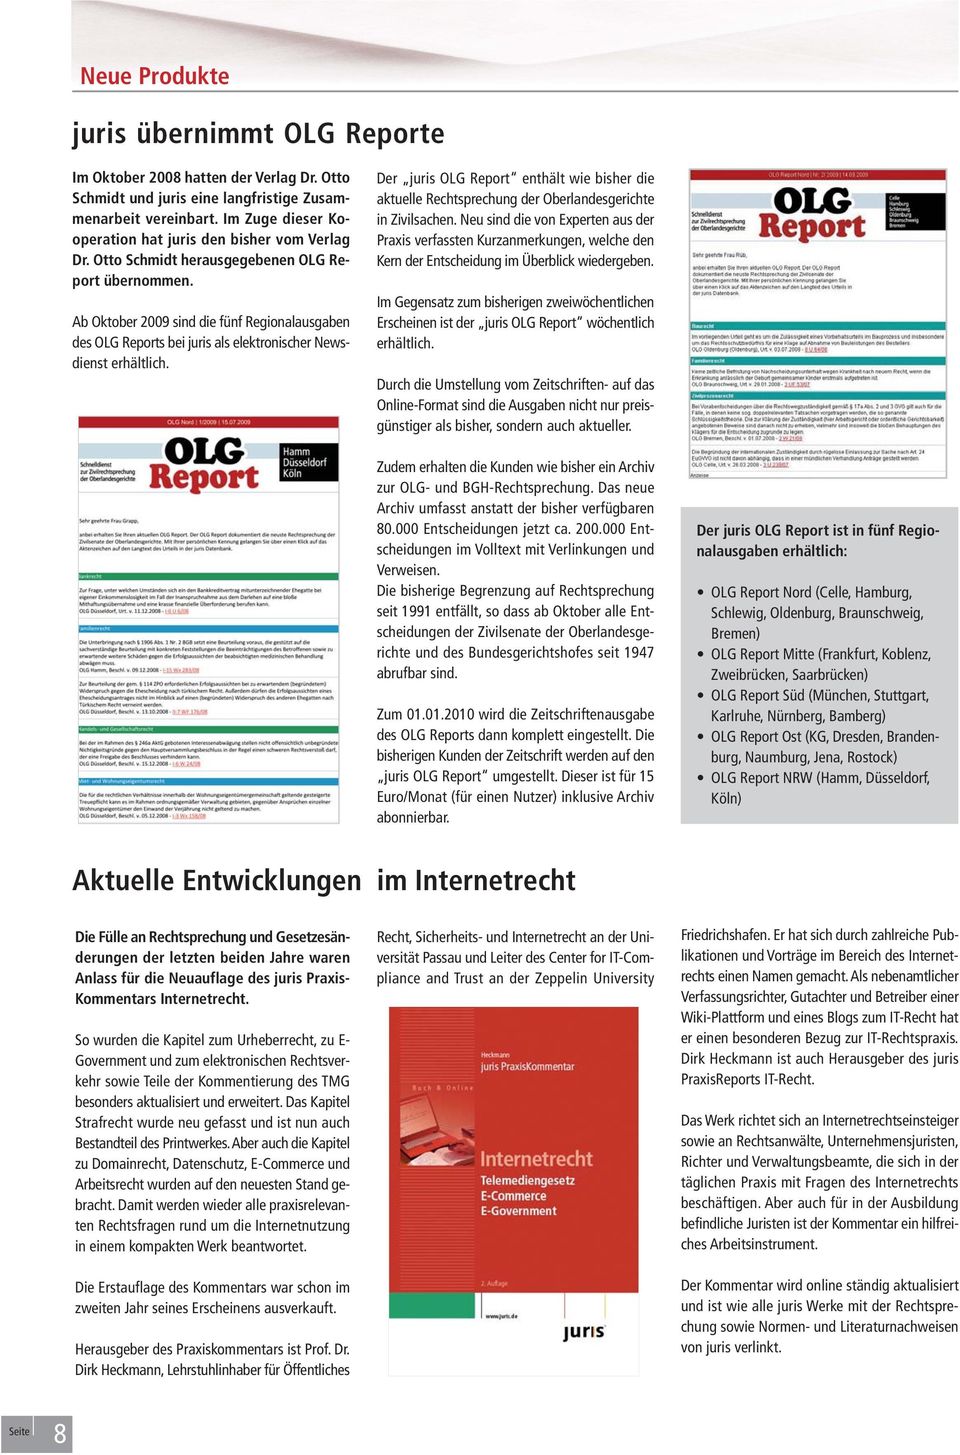 Ab Oktober 2009 sind die fünf Regionalausgaben des OLG Reports bei juris als elektronischer Newsdienst erhältlich.